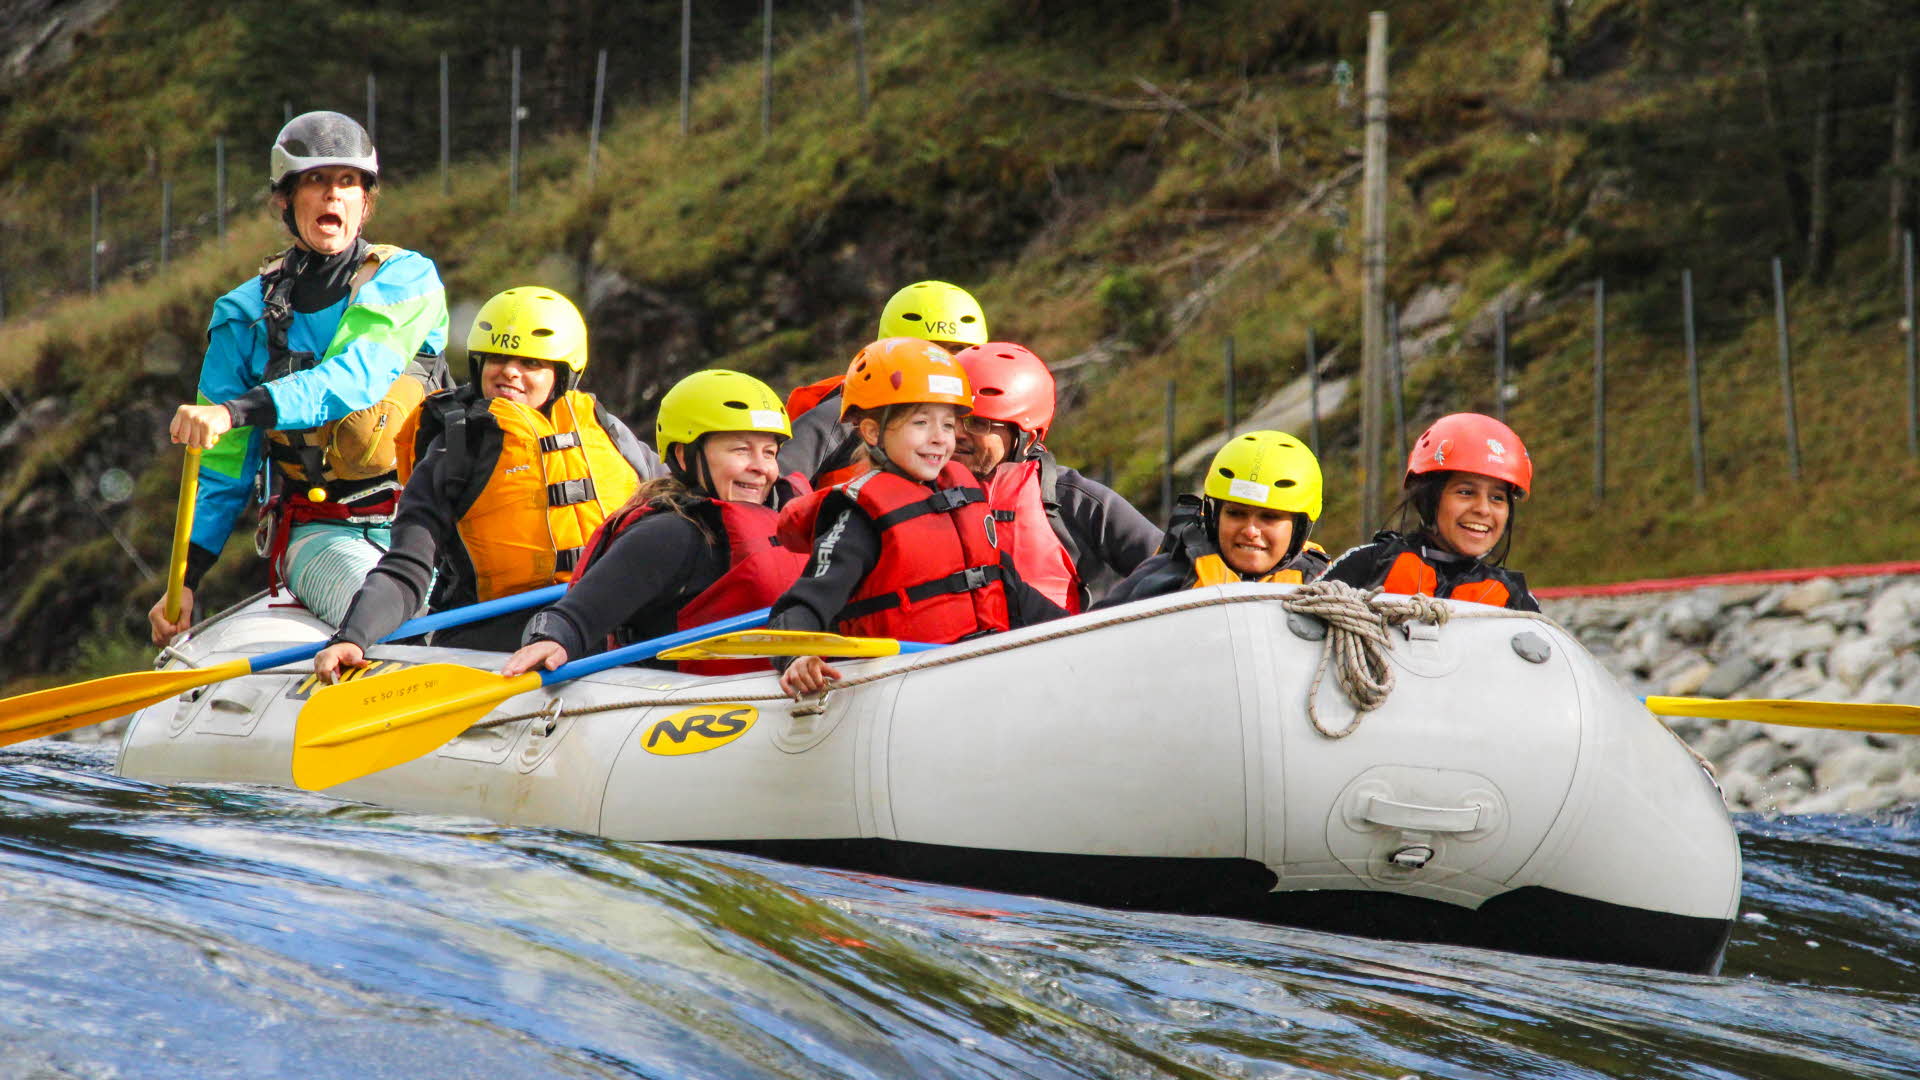 Mit Schwimmwesten und Helmen ausgestattete Kinder sitzen lächelnd in einem Floß, während der Guide hinter ihnen laut ruft.